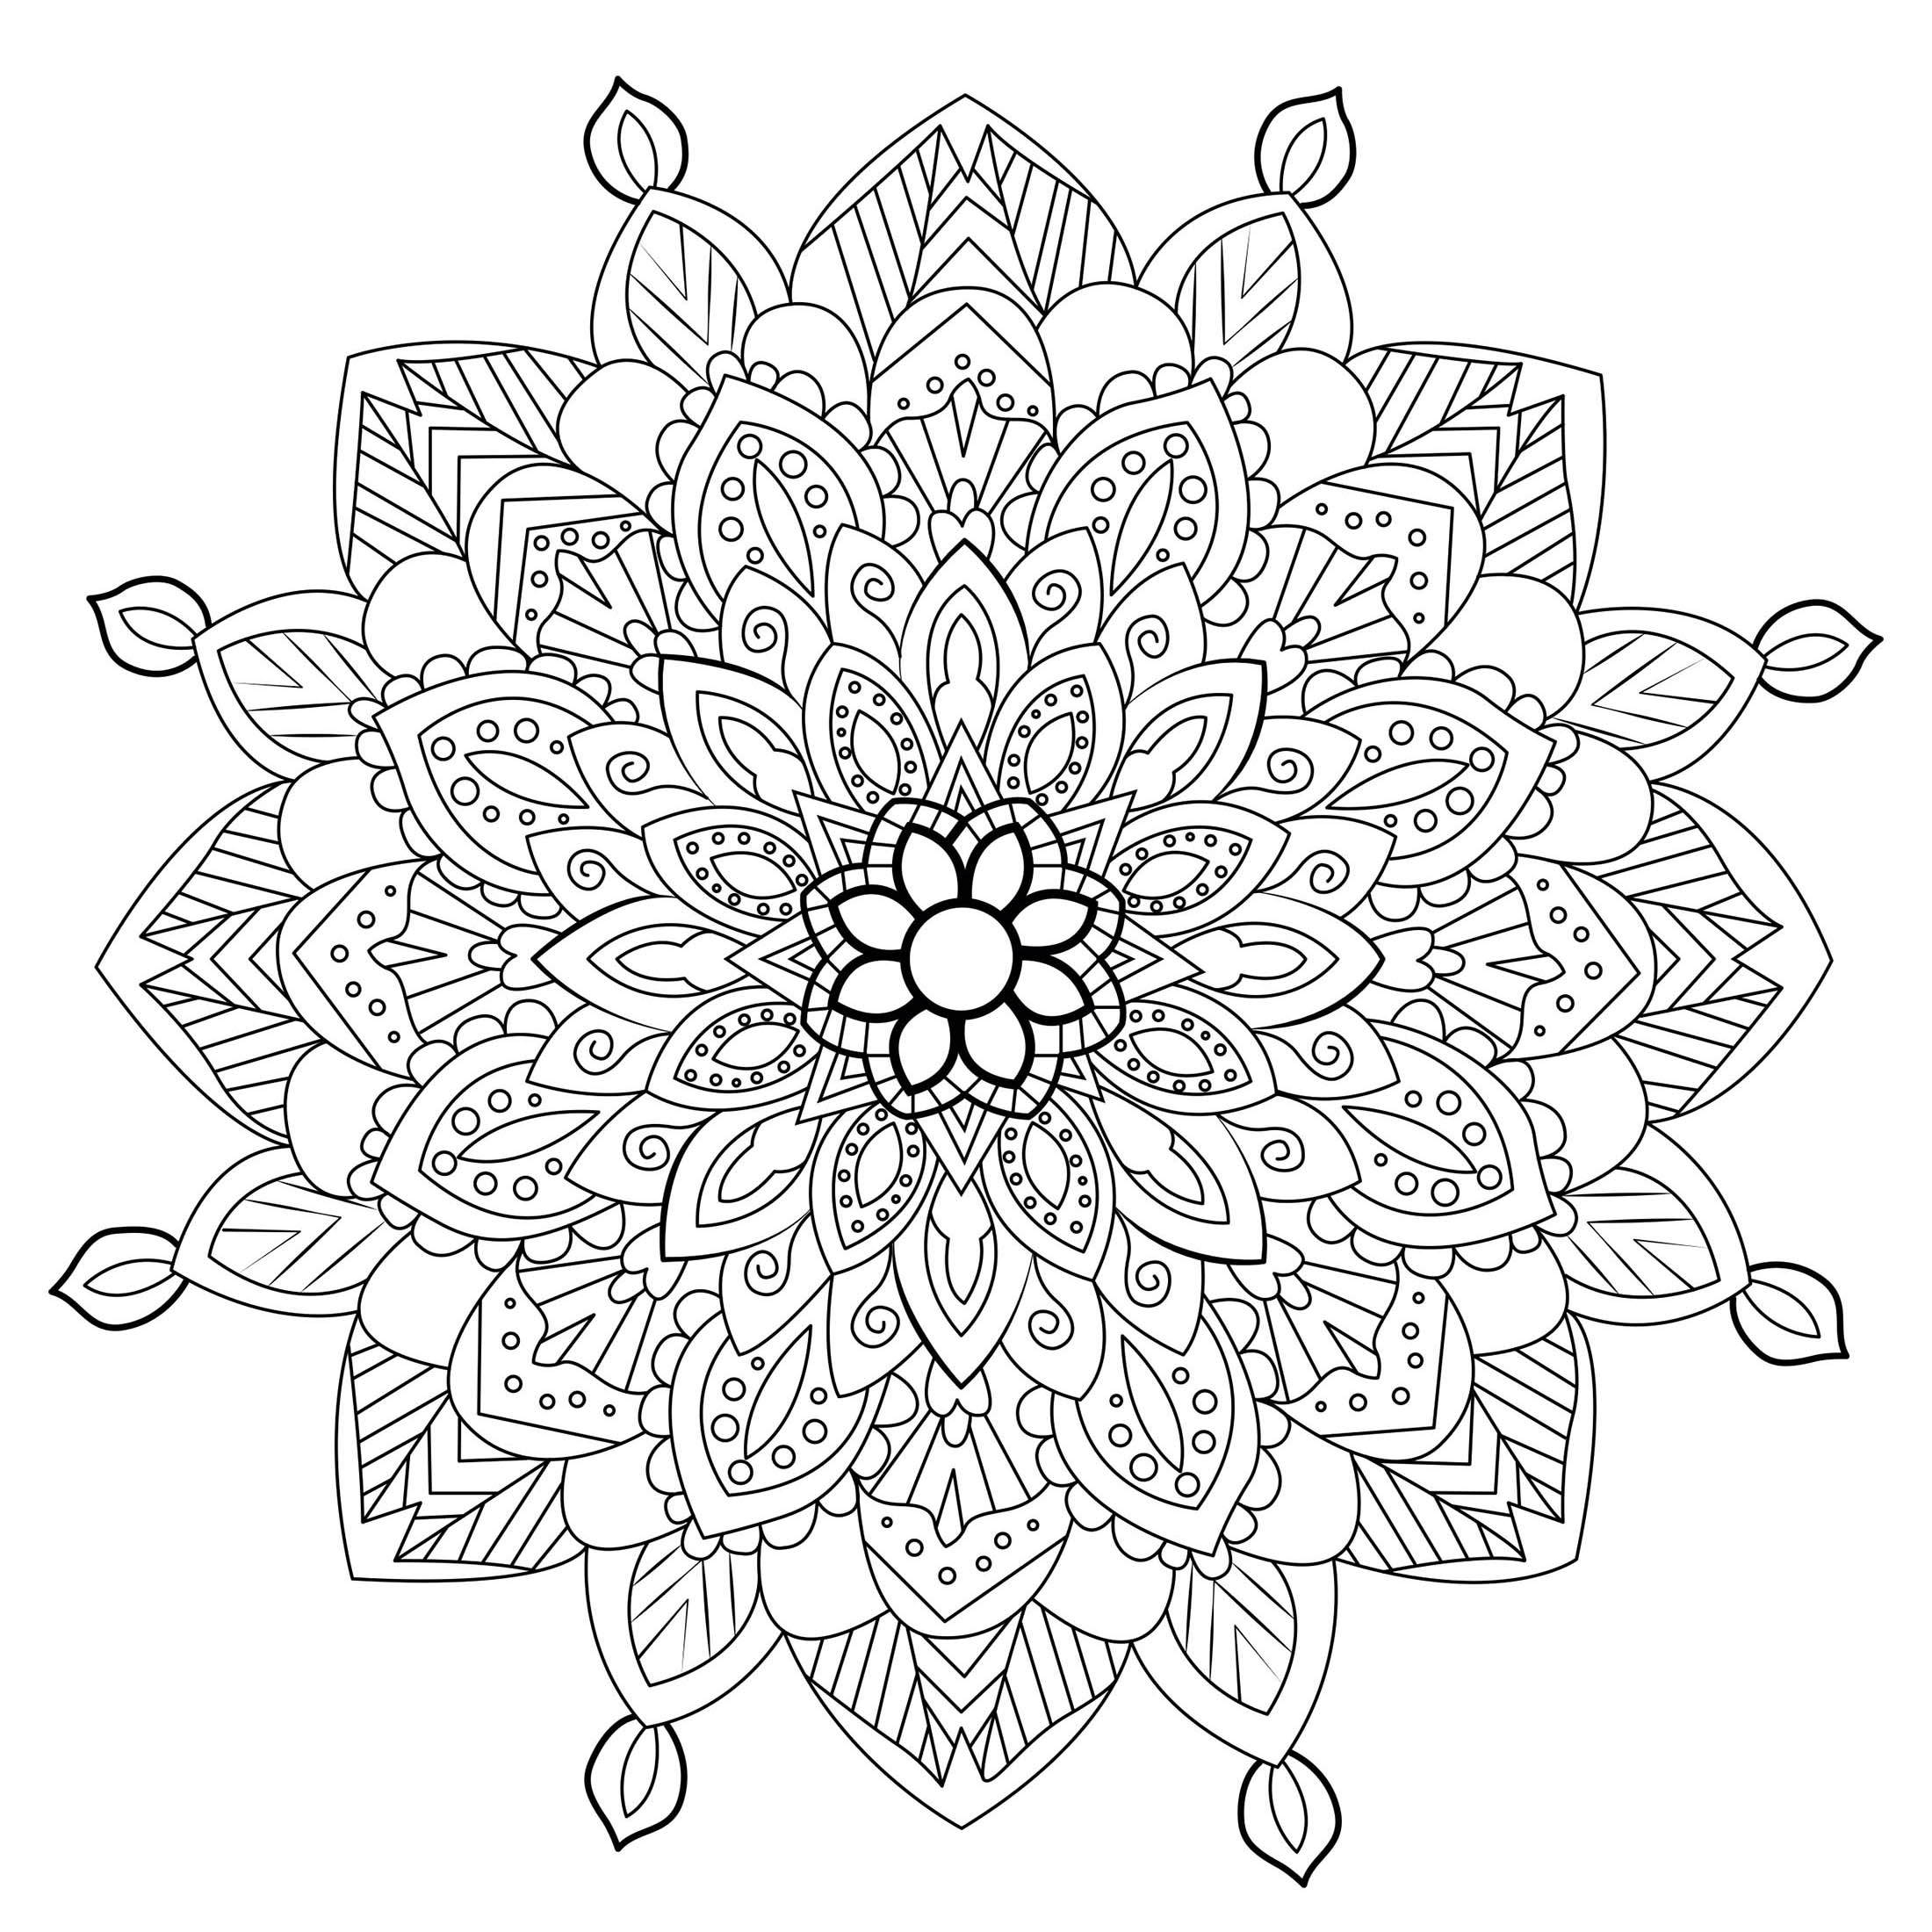 Préparez vos feutres et crayons pour réaliser la mise en couleur de ce Mandala Anti-stress plein de petits détails et zones intriquées.